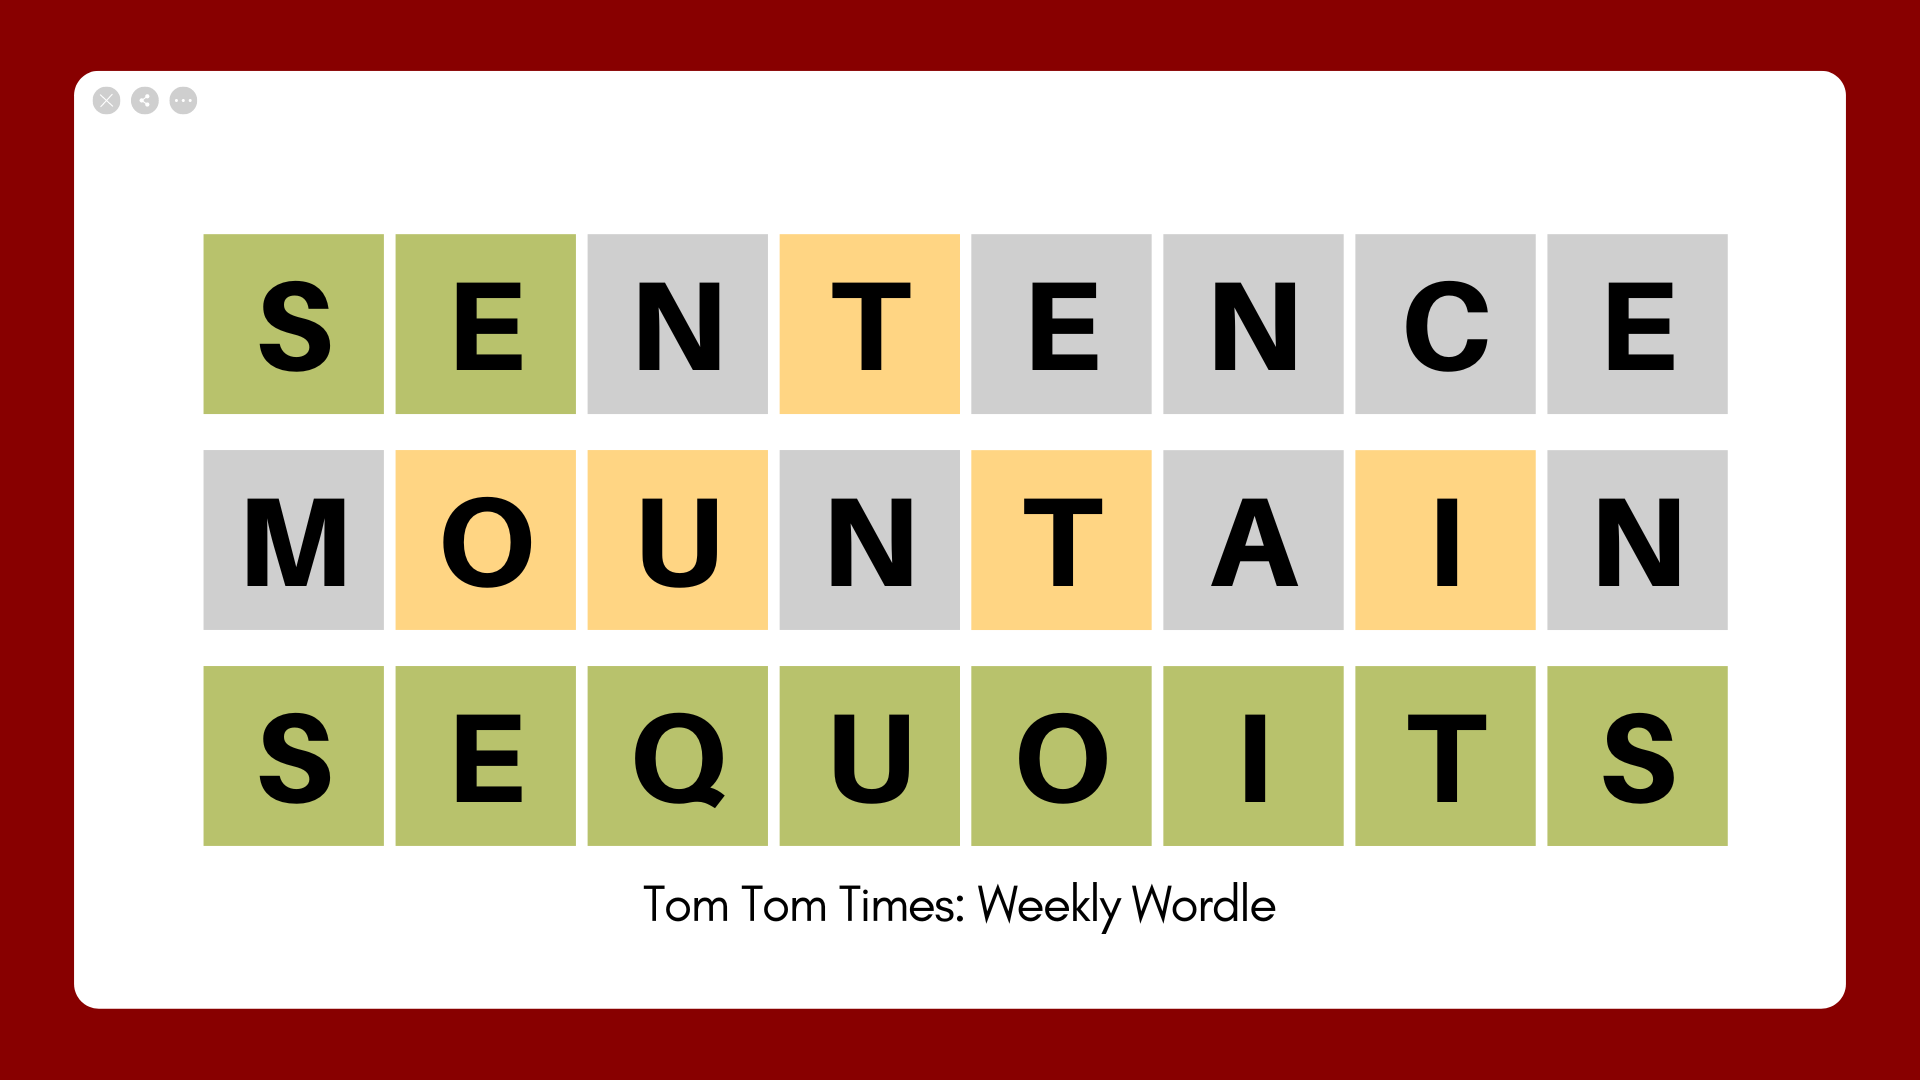 Tom Tom Times: Weekly Wordle 03